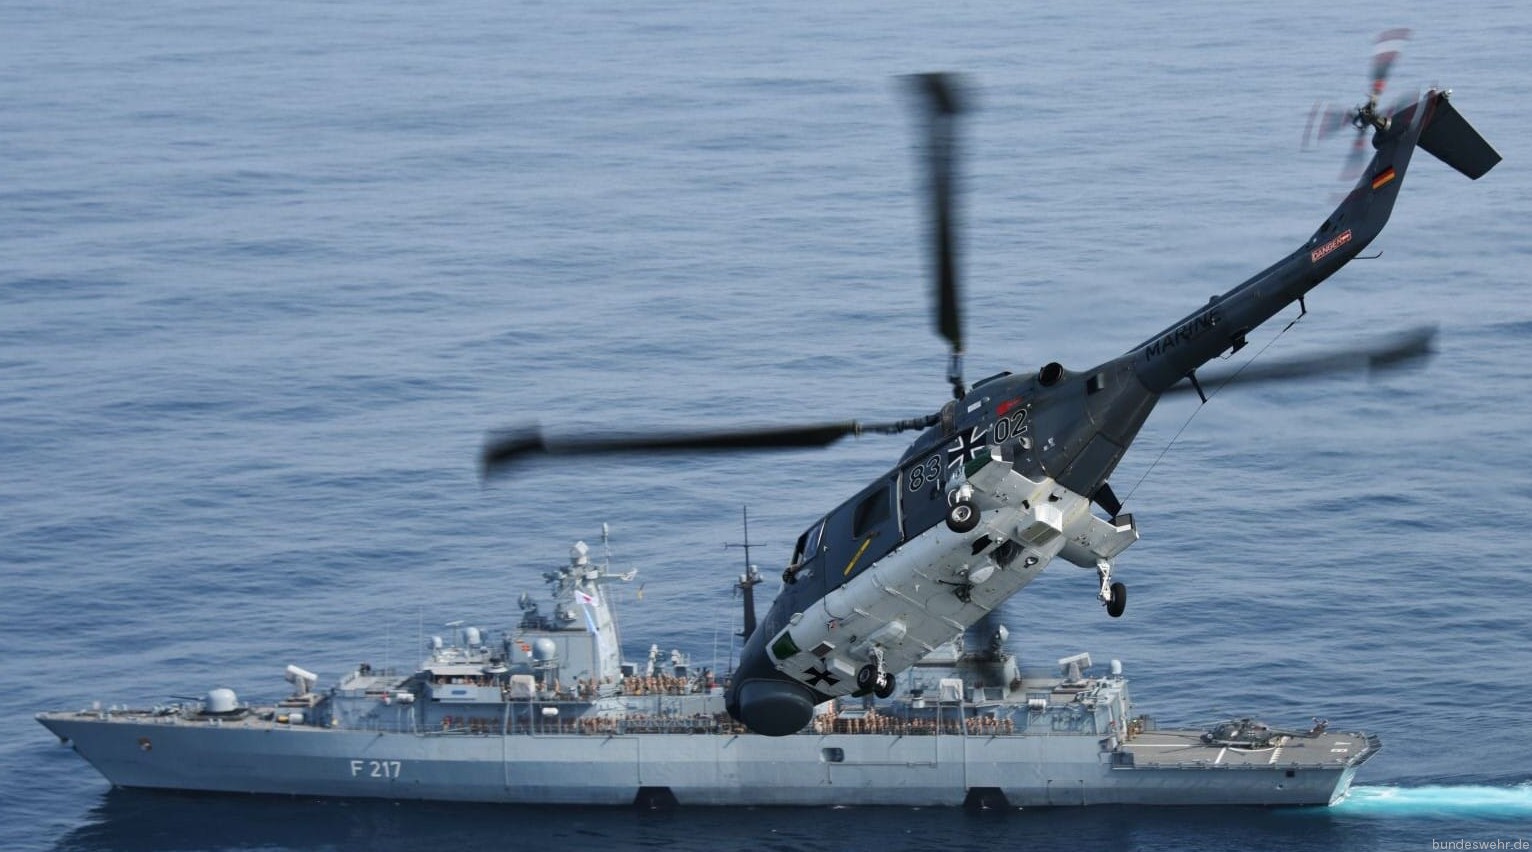 sea lynx mk.88a westland naval helicopter german navy deutsche marine 28 frigate bayern f-217